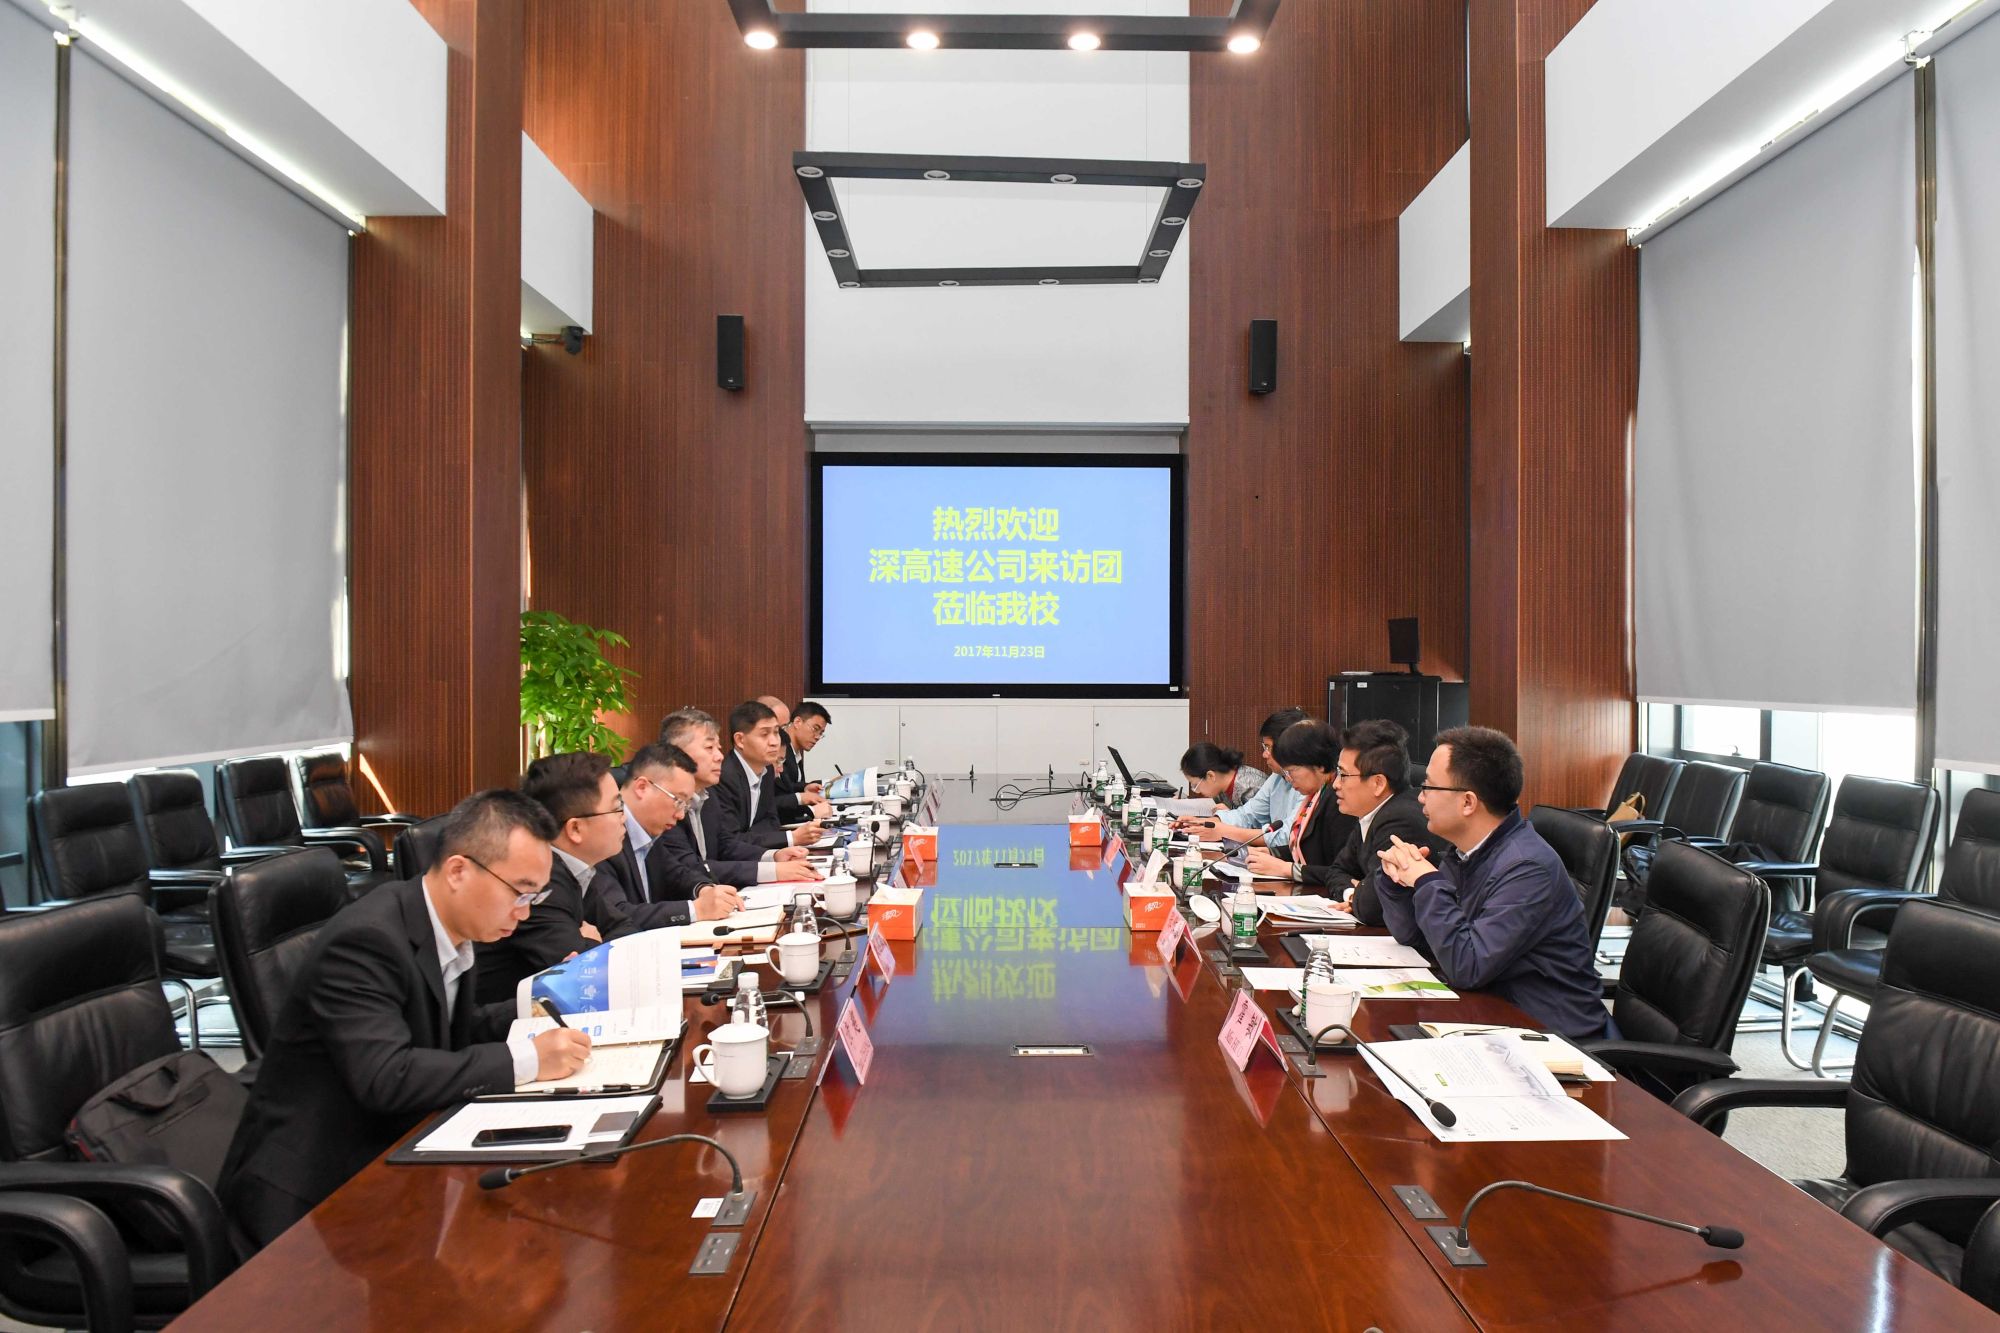 Chairman of Shenzhen Expressway Hu Wei visits SUSTech to discuss partnership